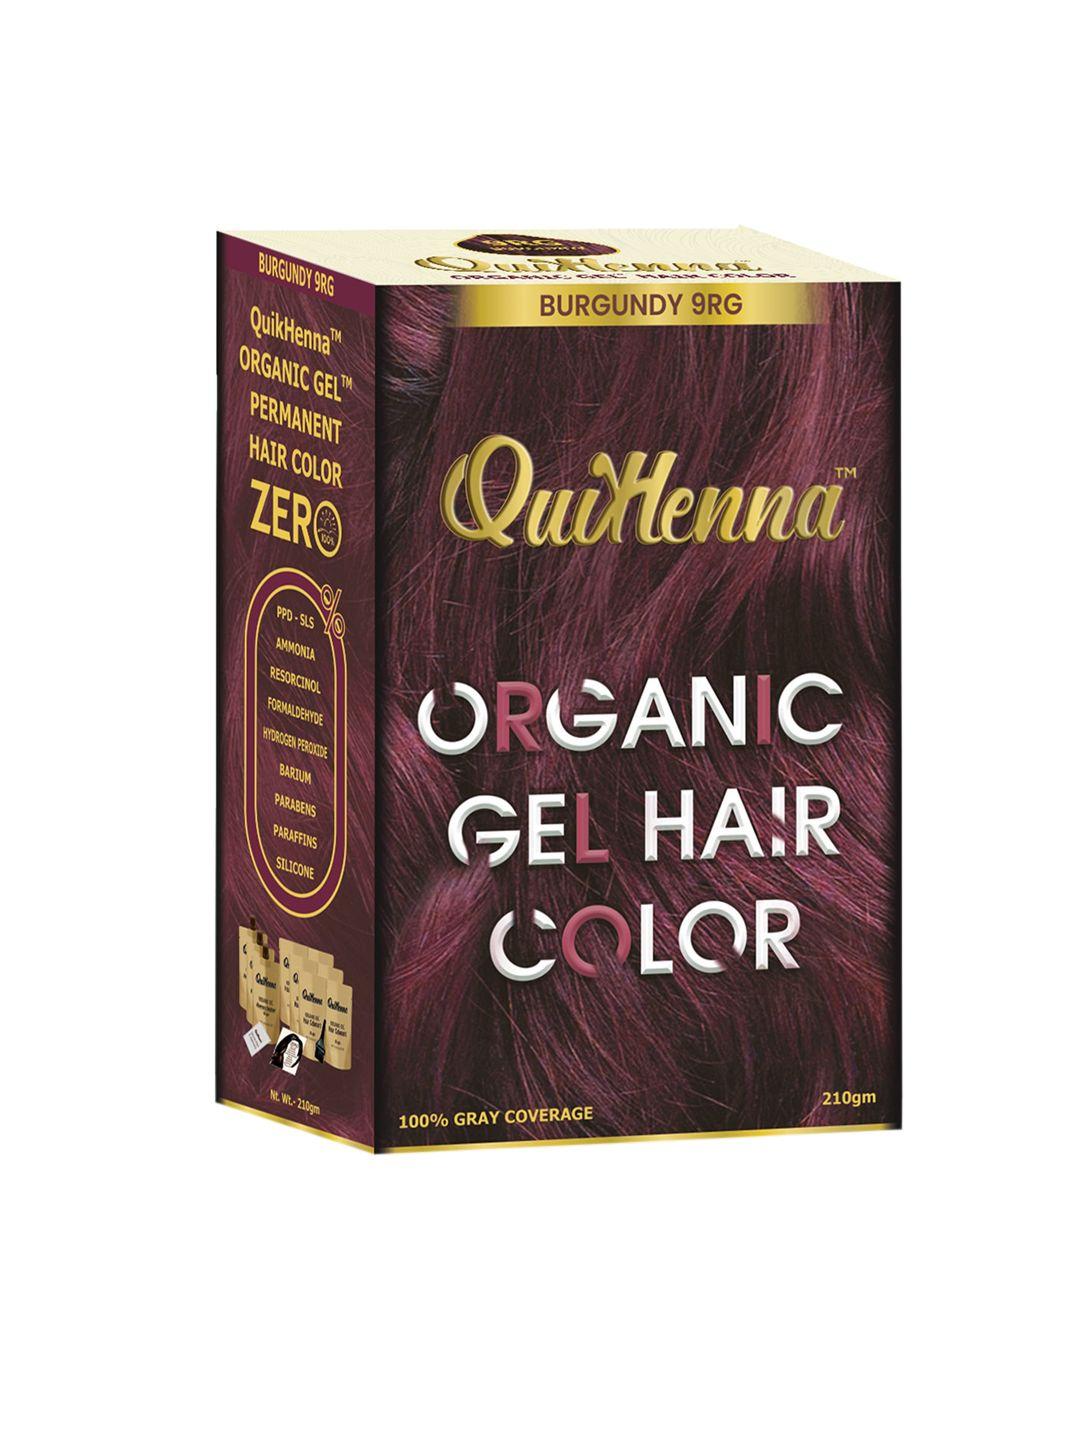 quikhenna organic gel ppd & ammonia free hair colour - burgundy 9rg